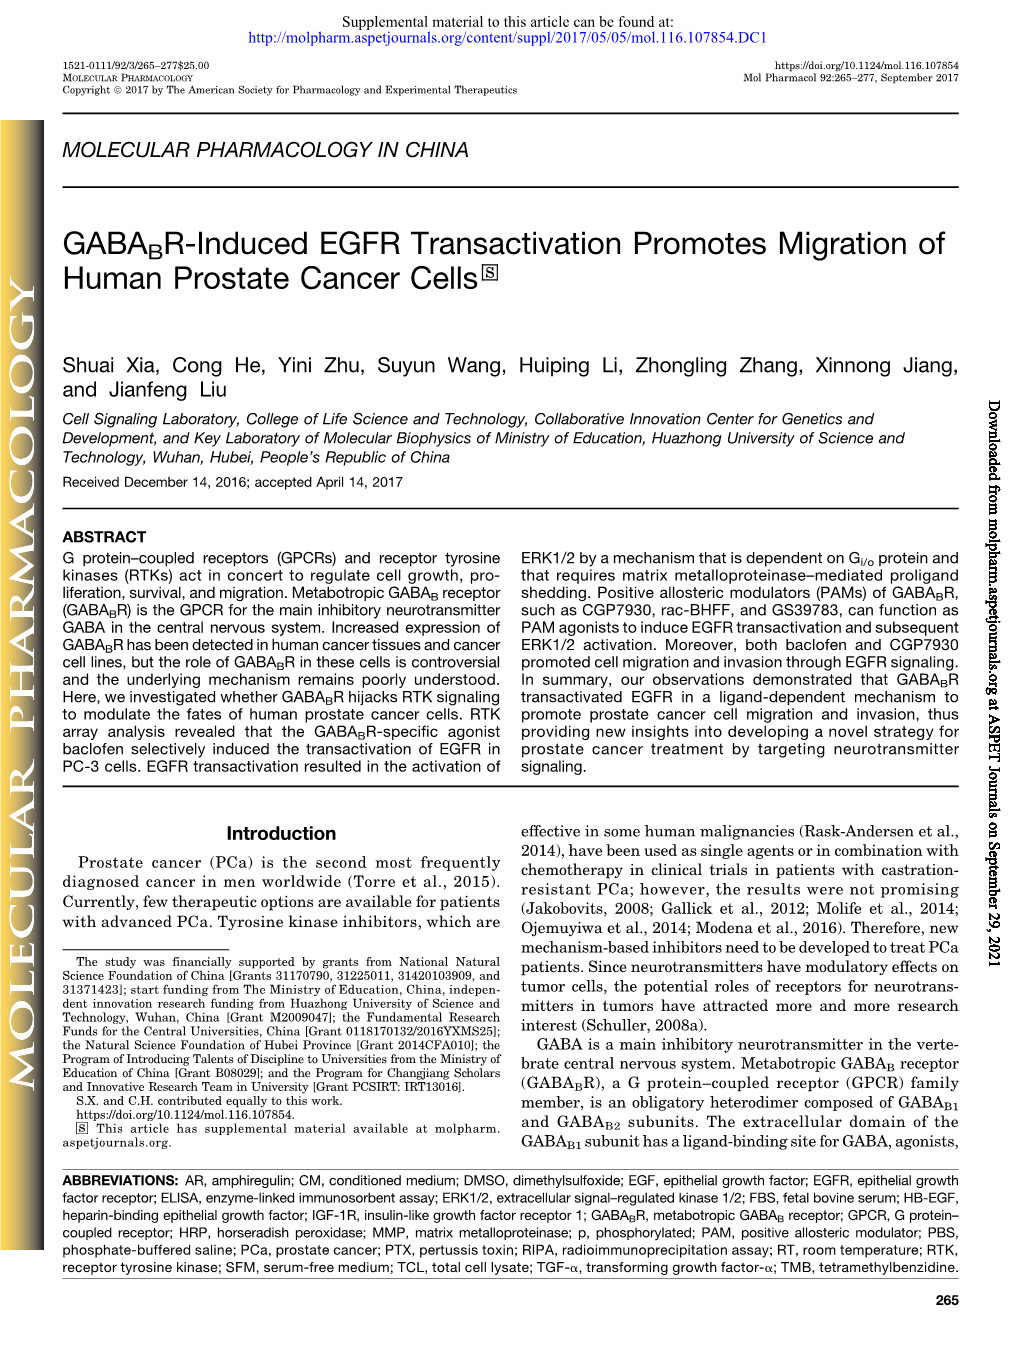 GABABR-Induced EGFR Transactivation Promotes Migration of Human Prostate Cancer Cells S